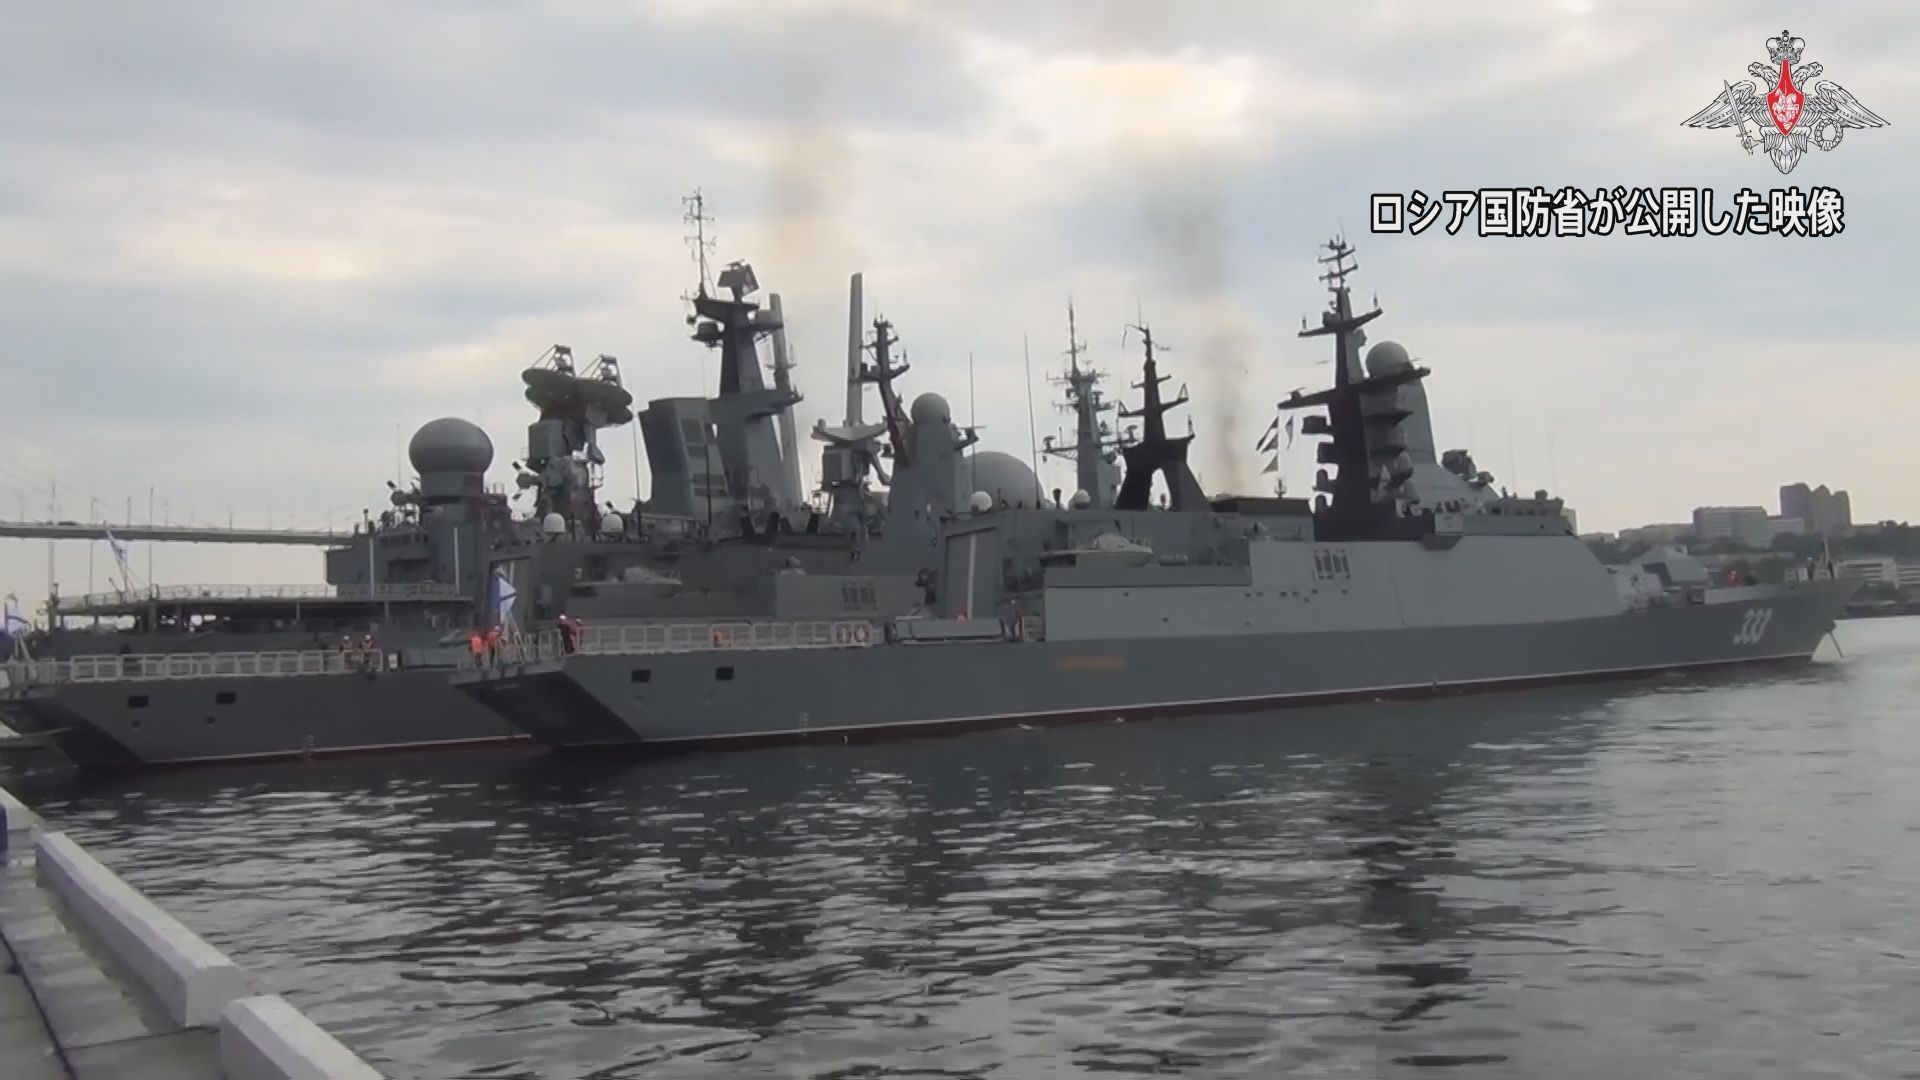 ロシア太平洋艦隊 18日から日本海などで演習　プーチン氏訪朝のタイミング 米などけん制狙いか